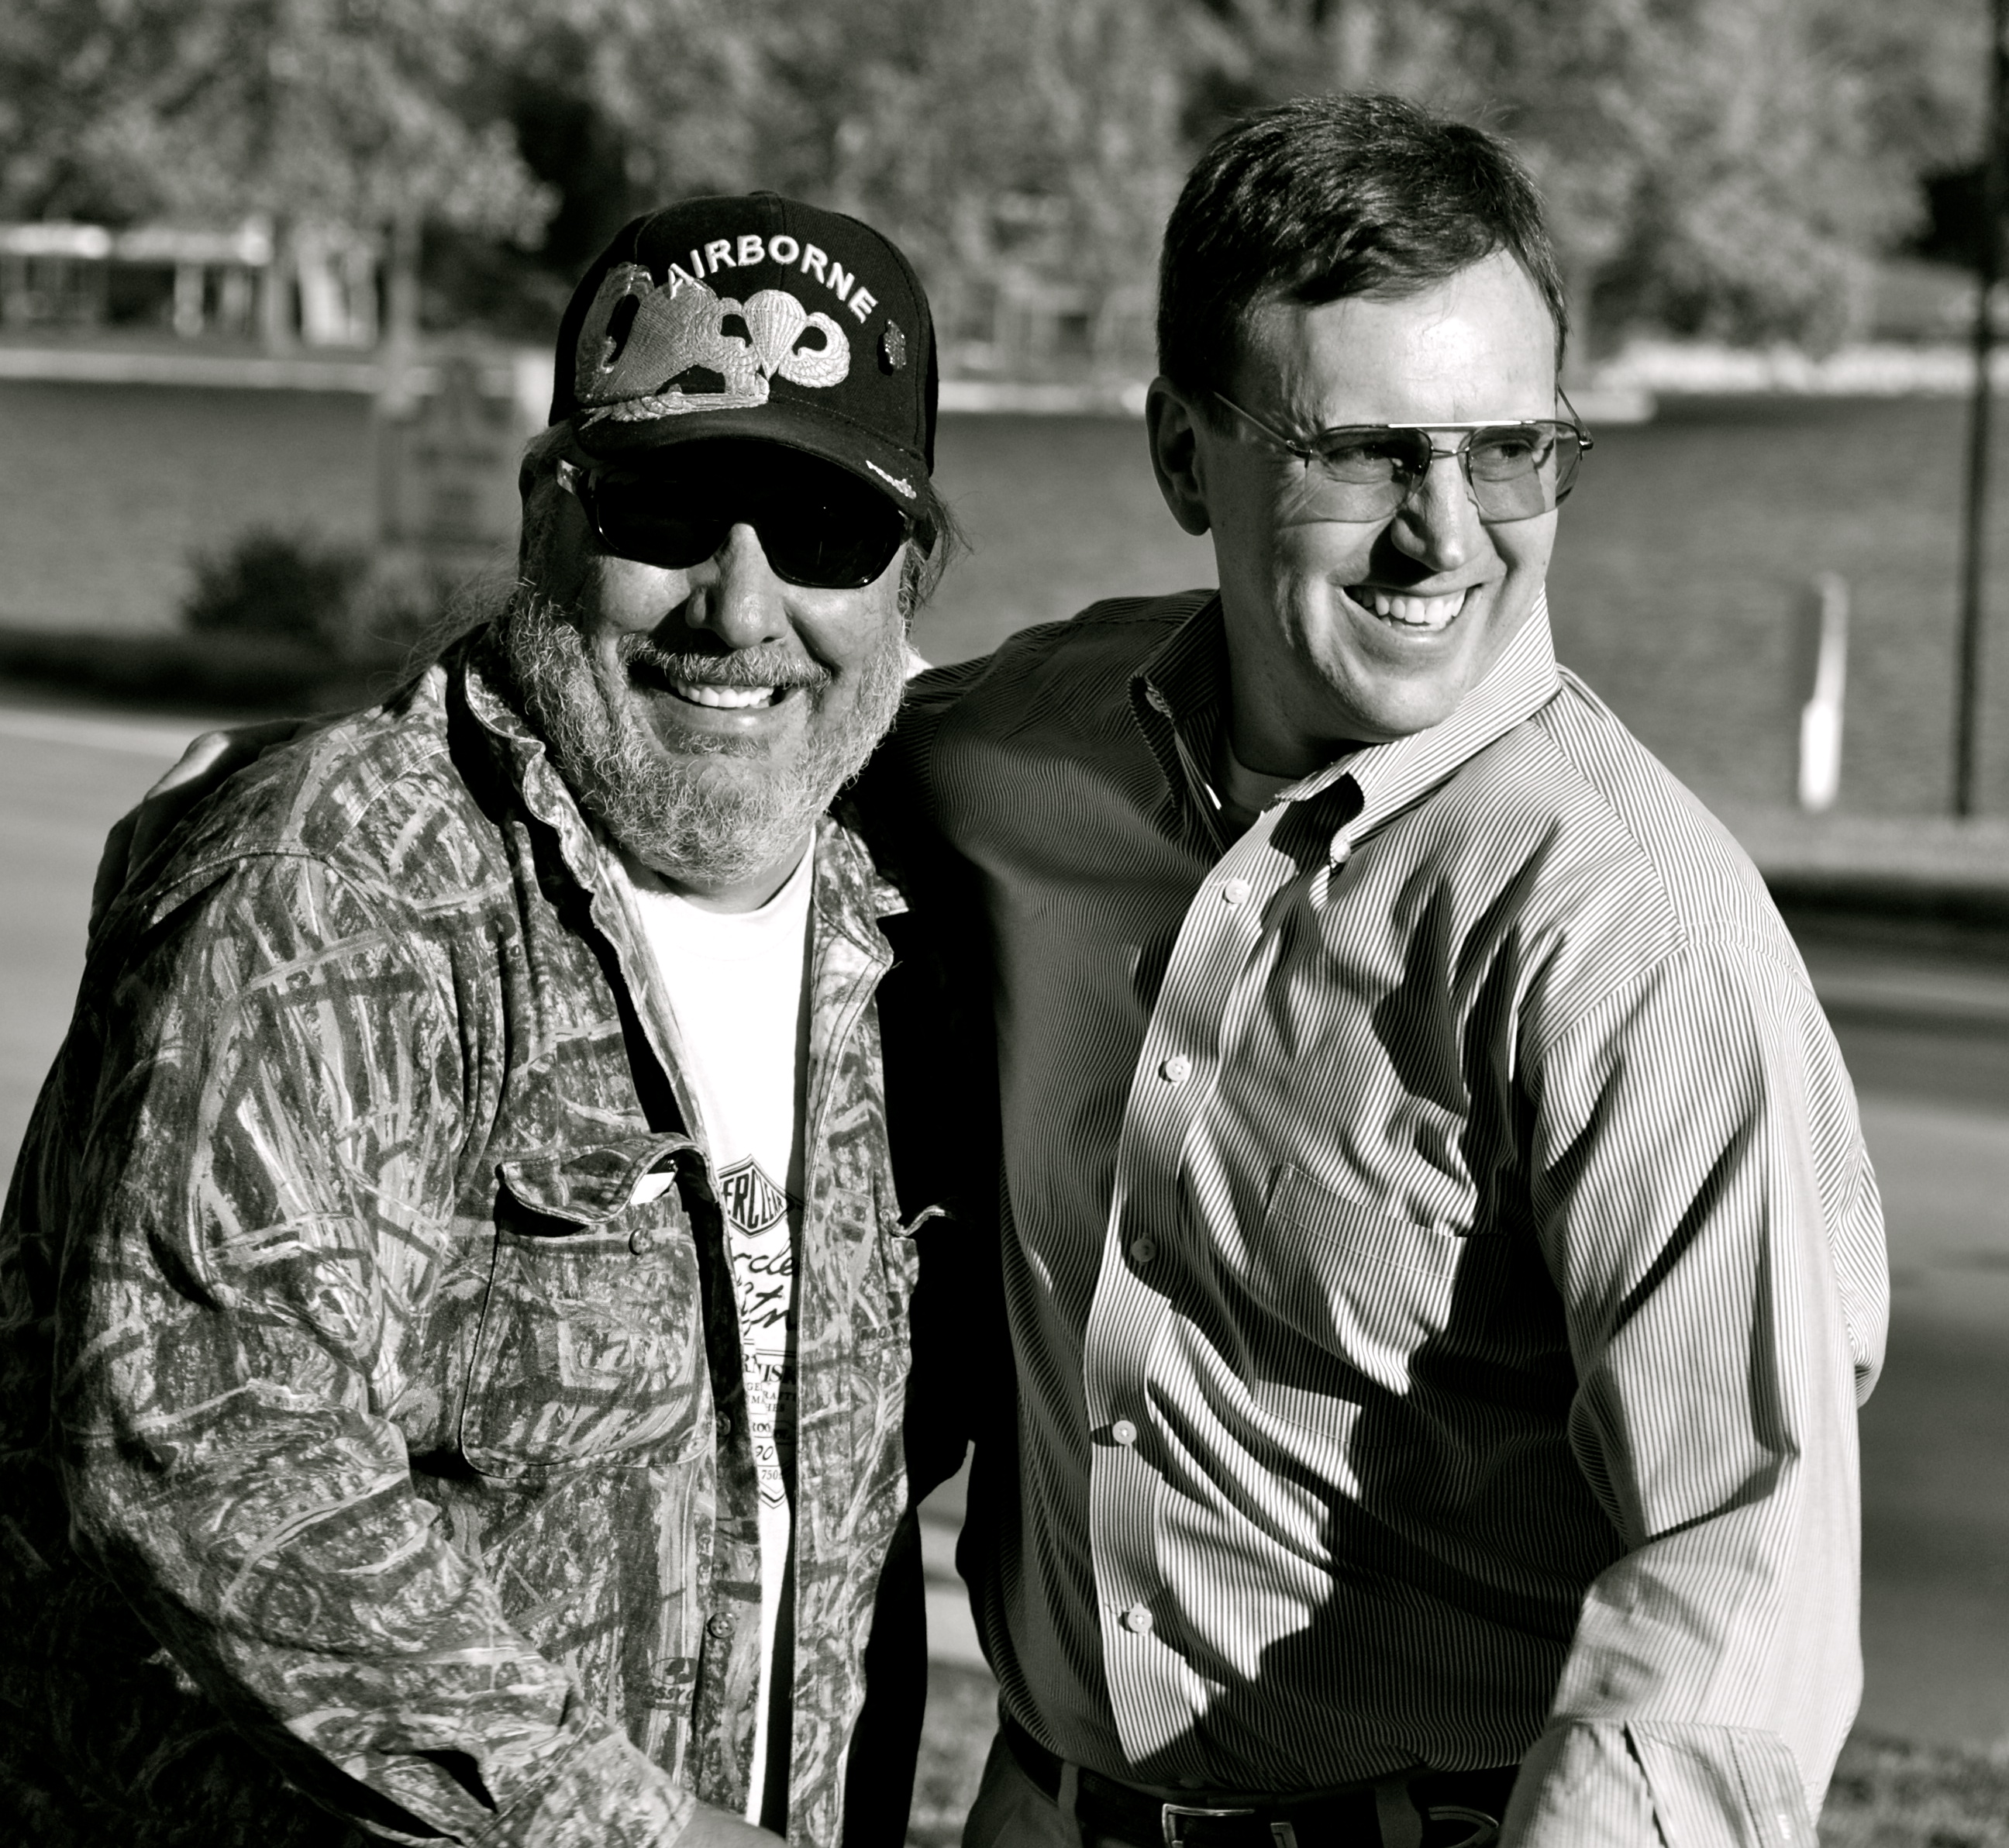 Ernie Cuevas and Perry D. Sullivan making Carolina Pines music album.